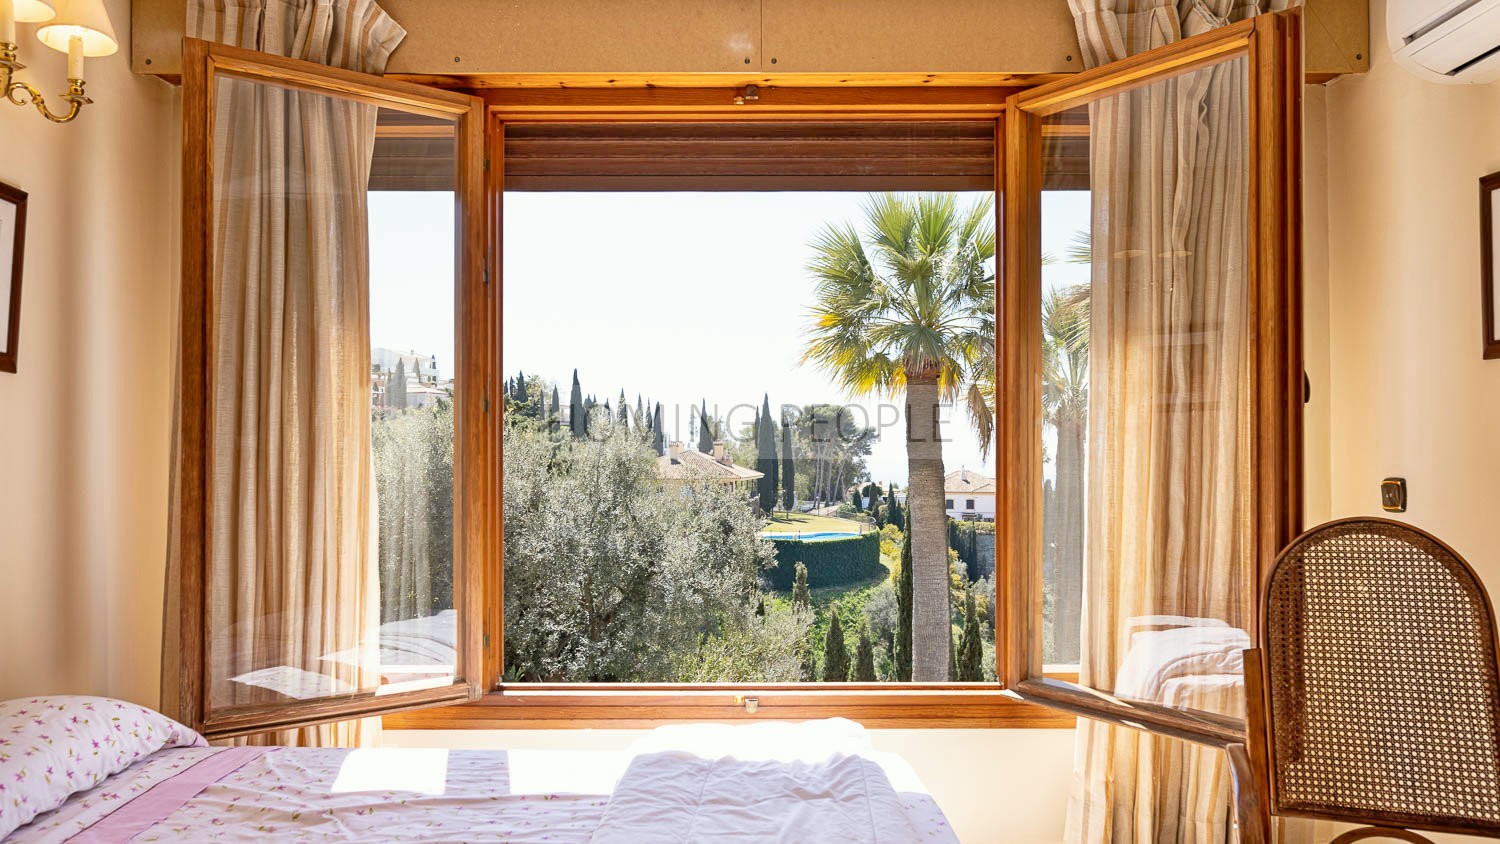 La experiencia de habitar una mansión en un rincón paradisíaco del Mediterráneo